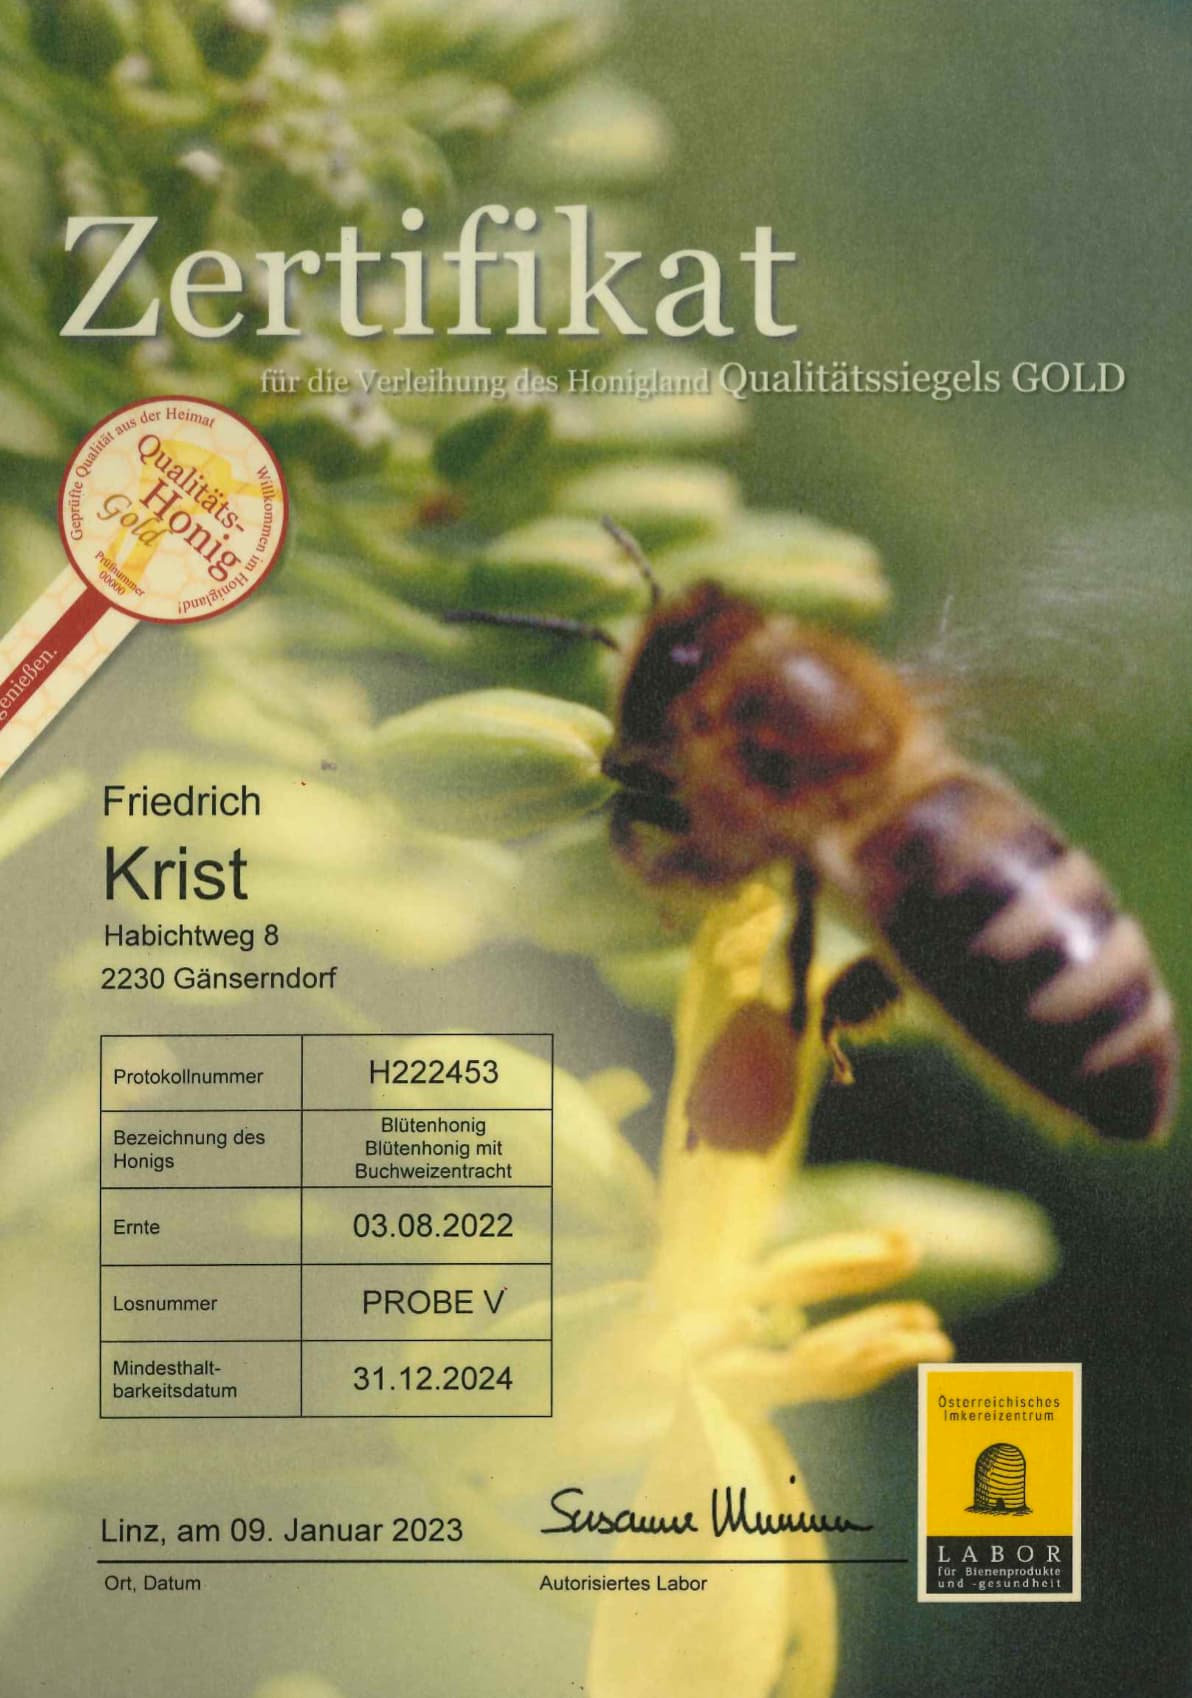 Zertifikat Qualitäts-Honig Gold Blütenhonig mit Buchweizentracht